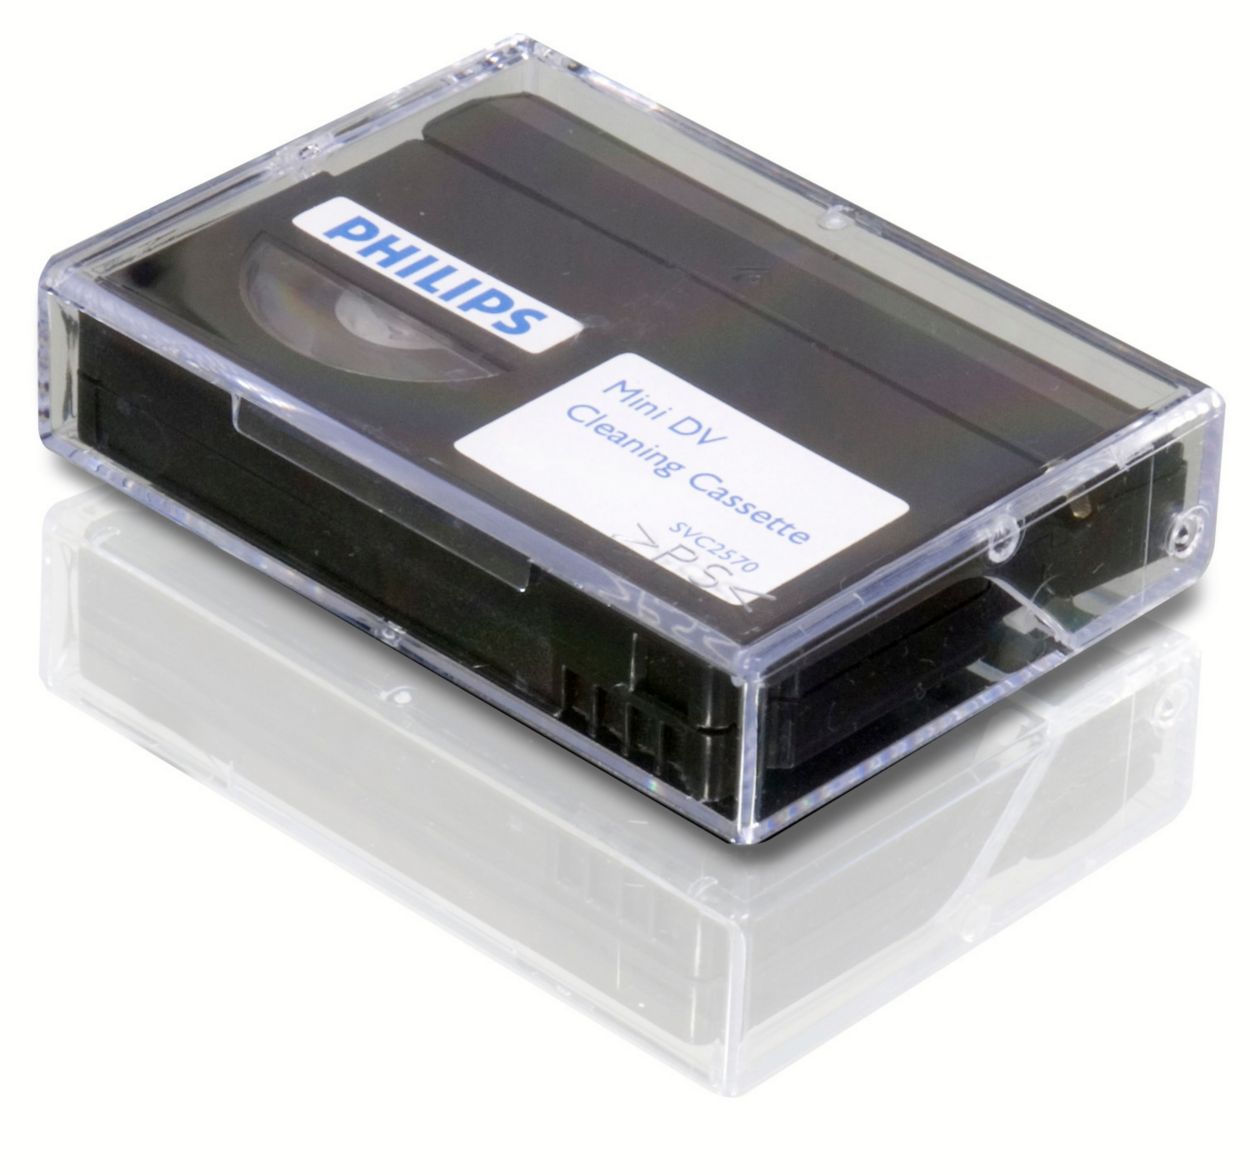 Cassette de nettoyage mini DV SVC2570/10